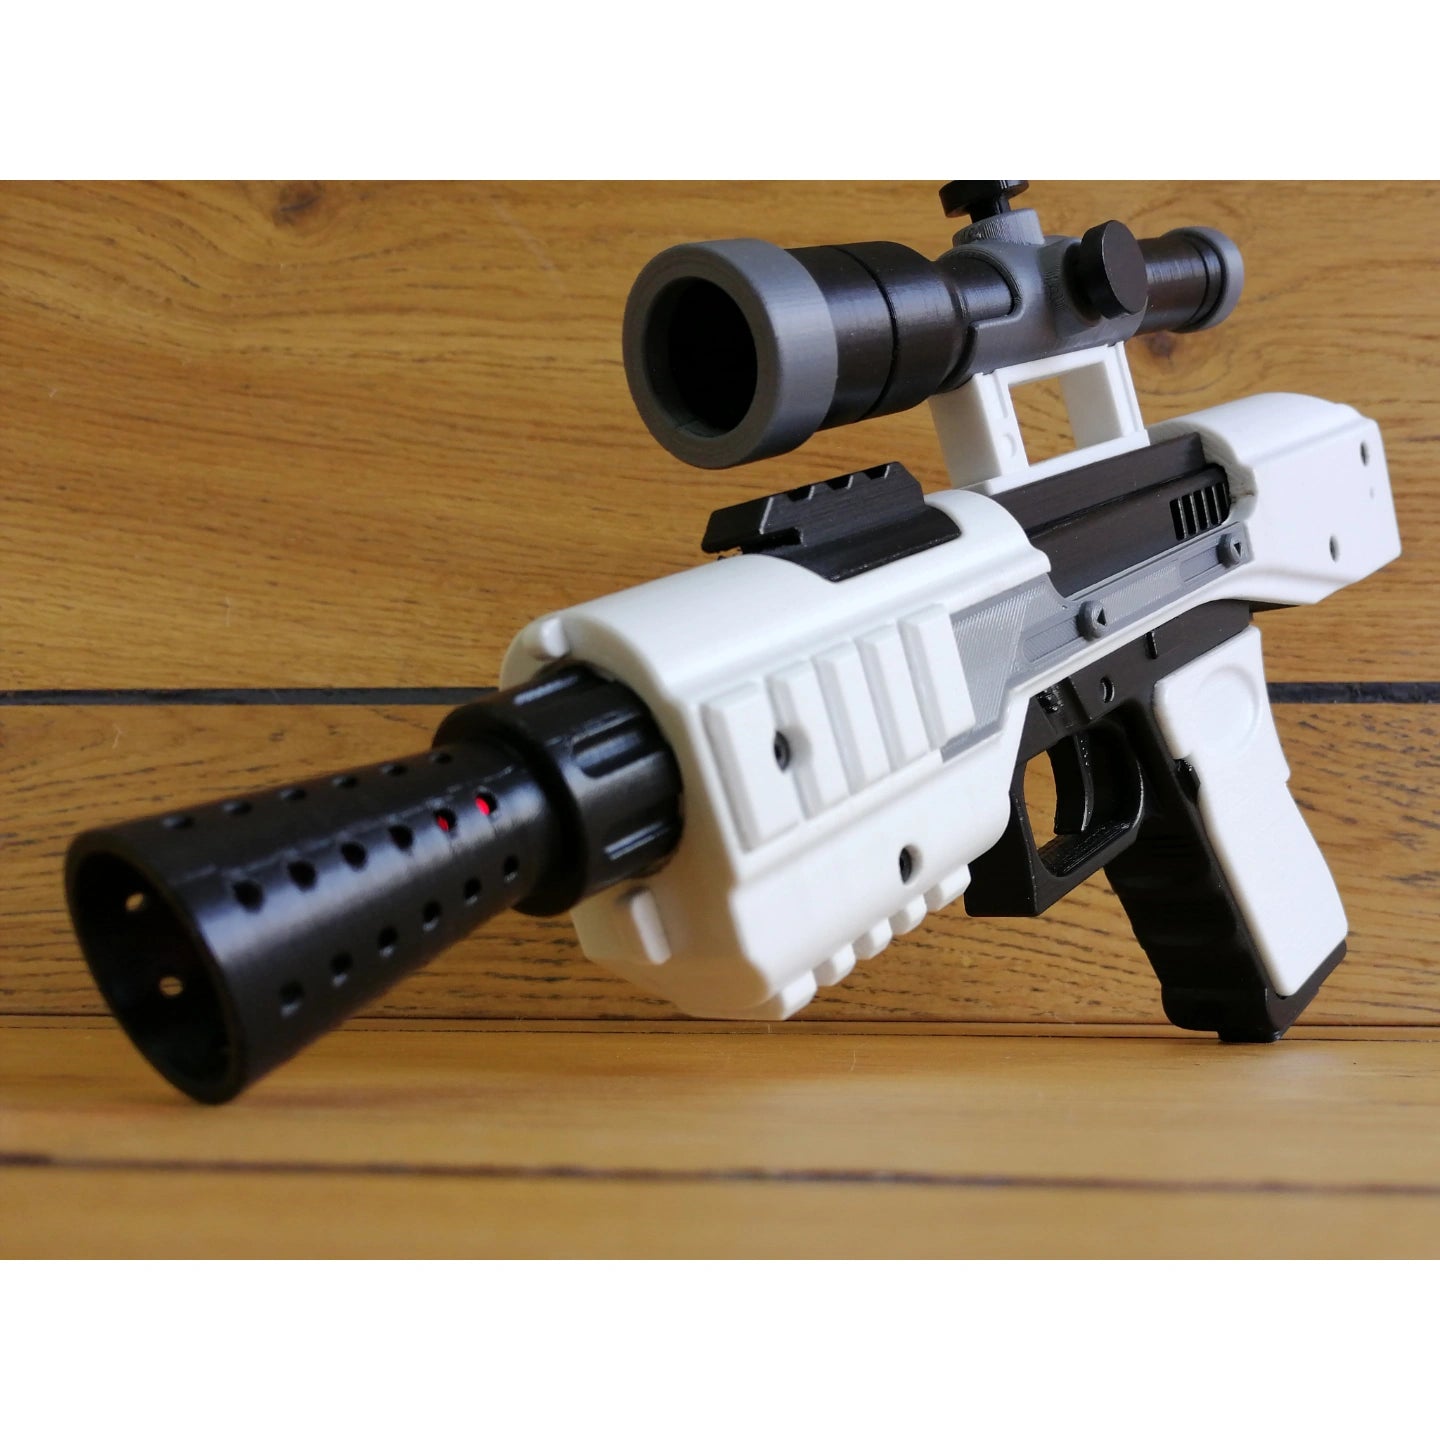 Star Wars SE-44C Stormtrooper Officer Blaster Pistol Cosplay Gun